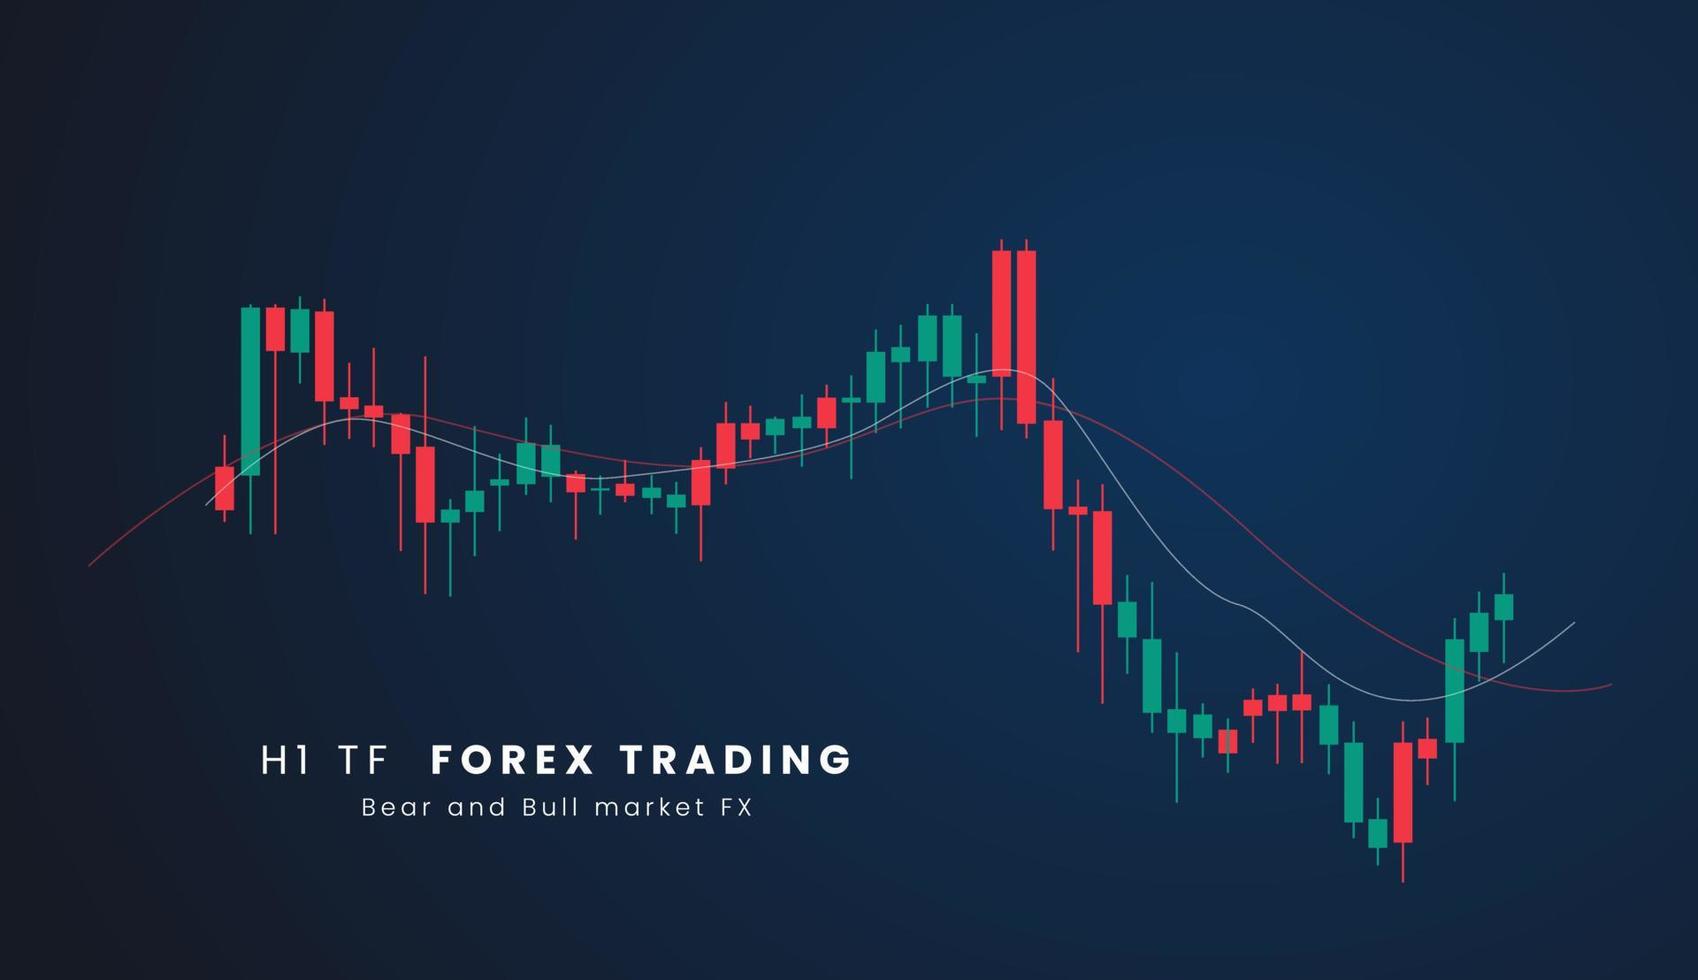 h1 tf voorraad markt of forex handel kandelaar diagram in grafisch ontwerp voor financieel investering concept vector